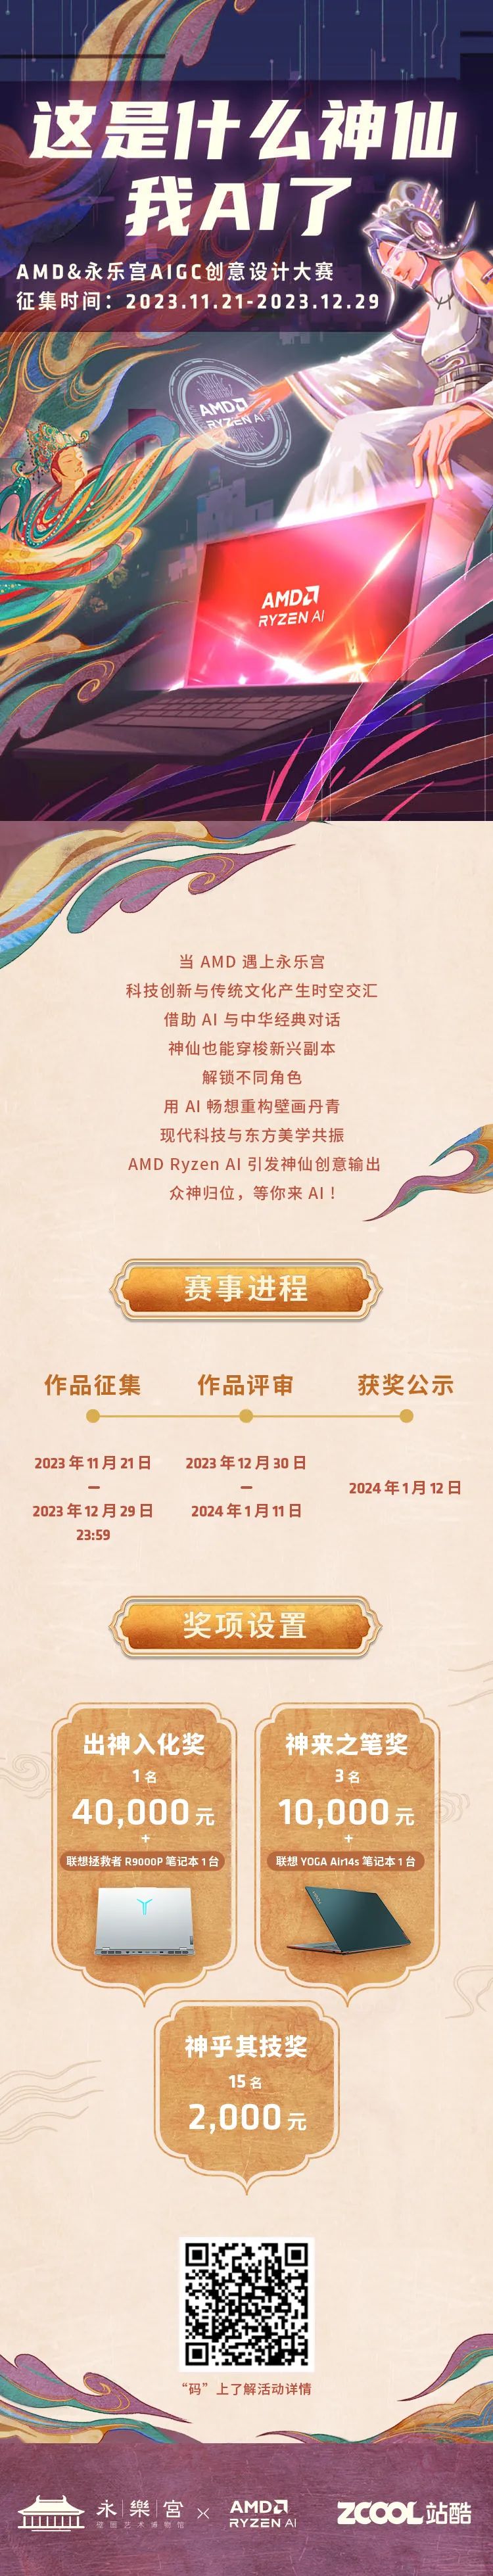 2023 AMD&永乐宫AIGC创意设计大赛-CNYISAI艺赛